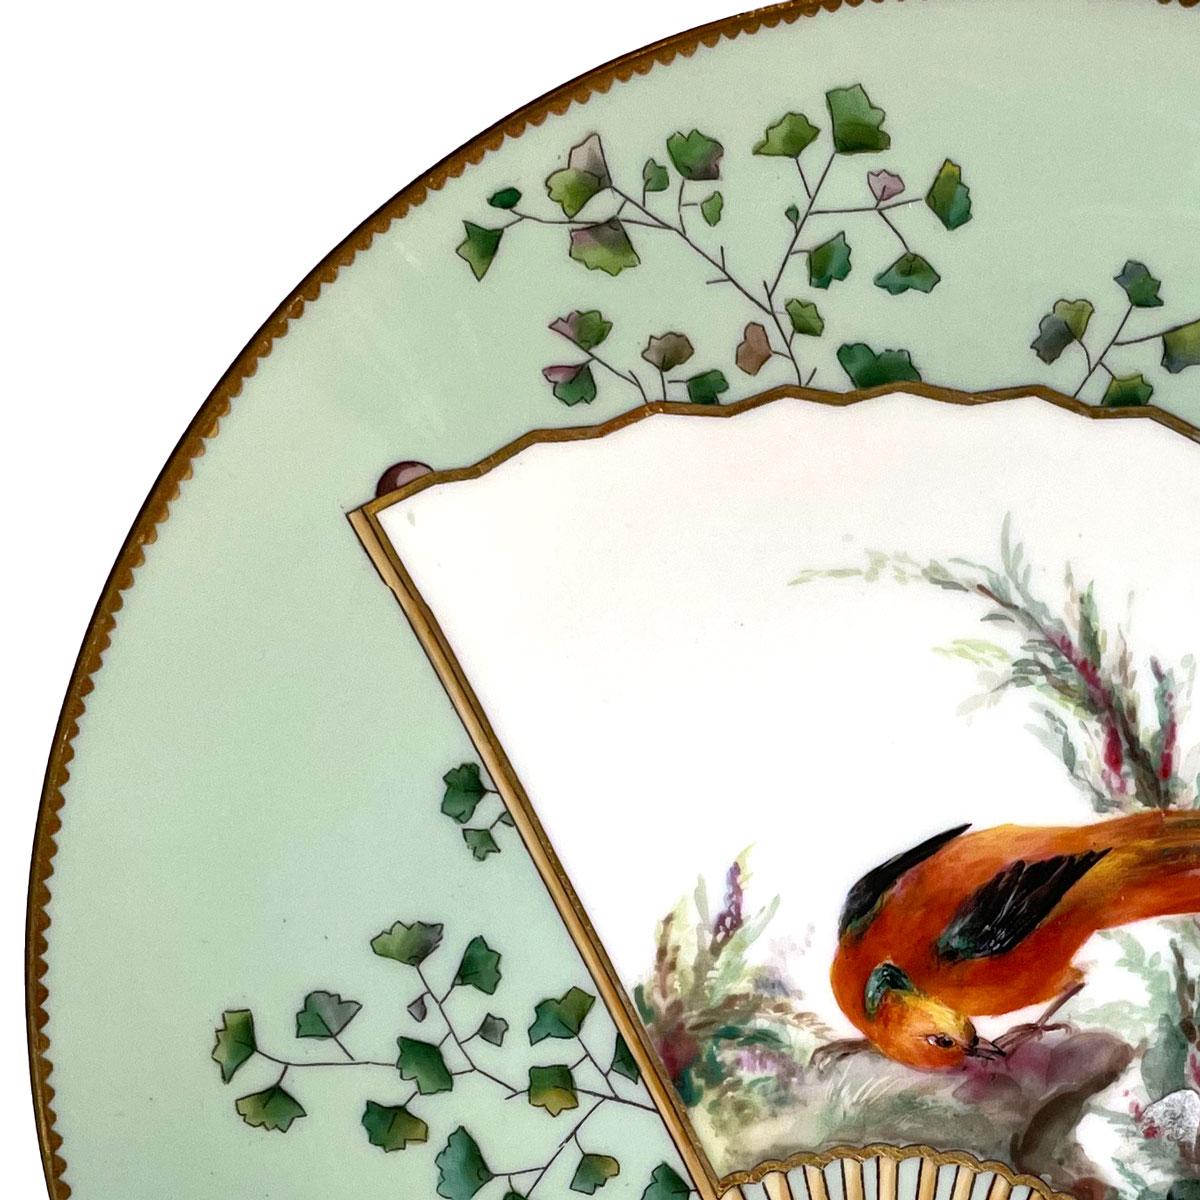 Grüner, ästhetischer Minton-Porzellanteller im Stil des Japonismus, hergestellt von Christopher Dresser. Runder Teller, verziert mit einem orientalischen Fächer, der einen schönen und bunten Vogel darstellt. Hübsche Dekoration mit Pflanzen und